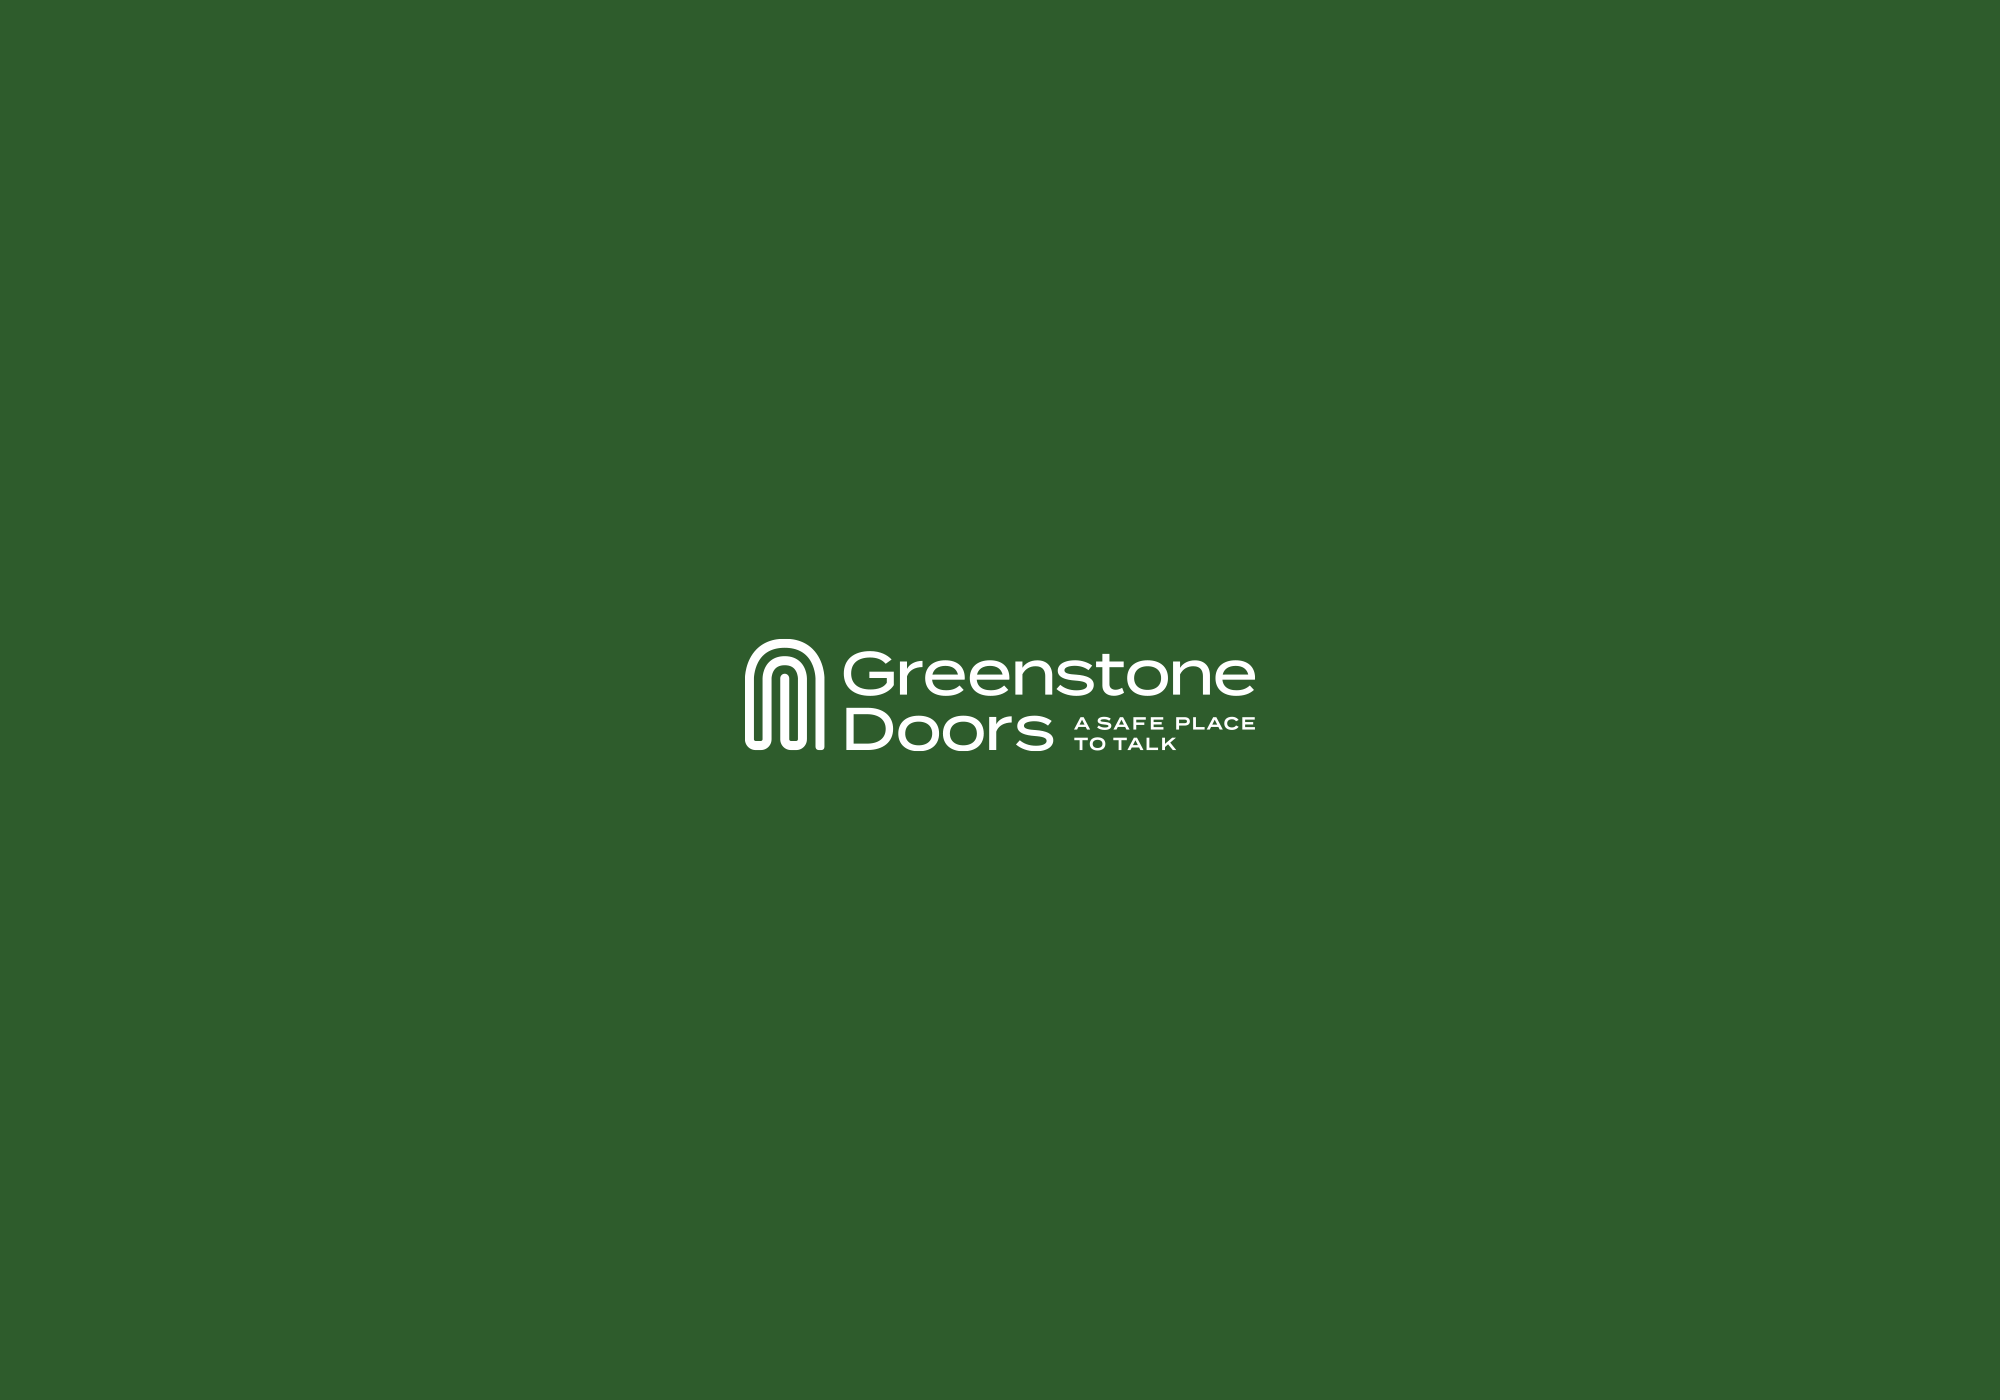 Vine-design-Trust-Greenstone-doors-01